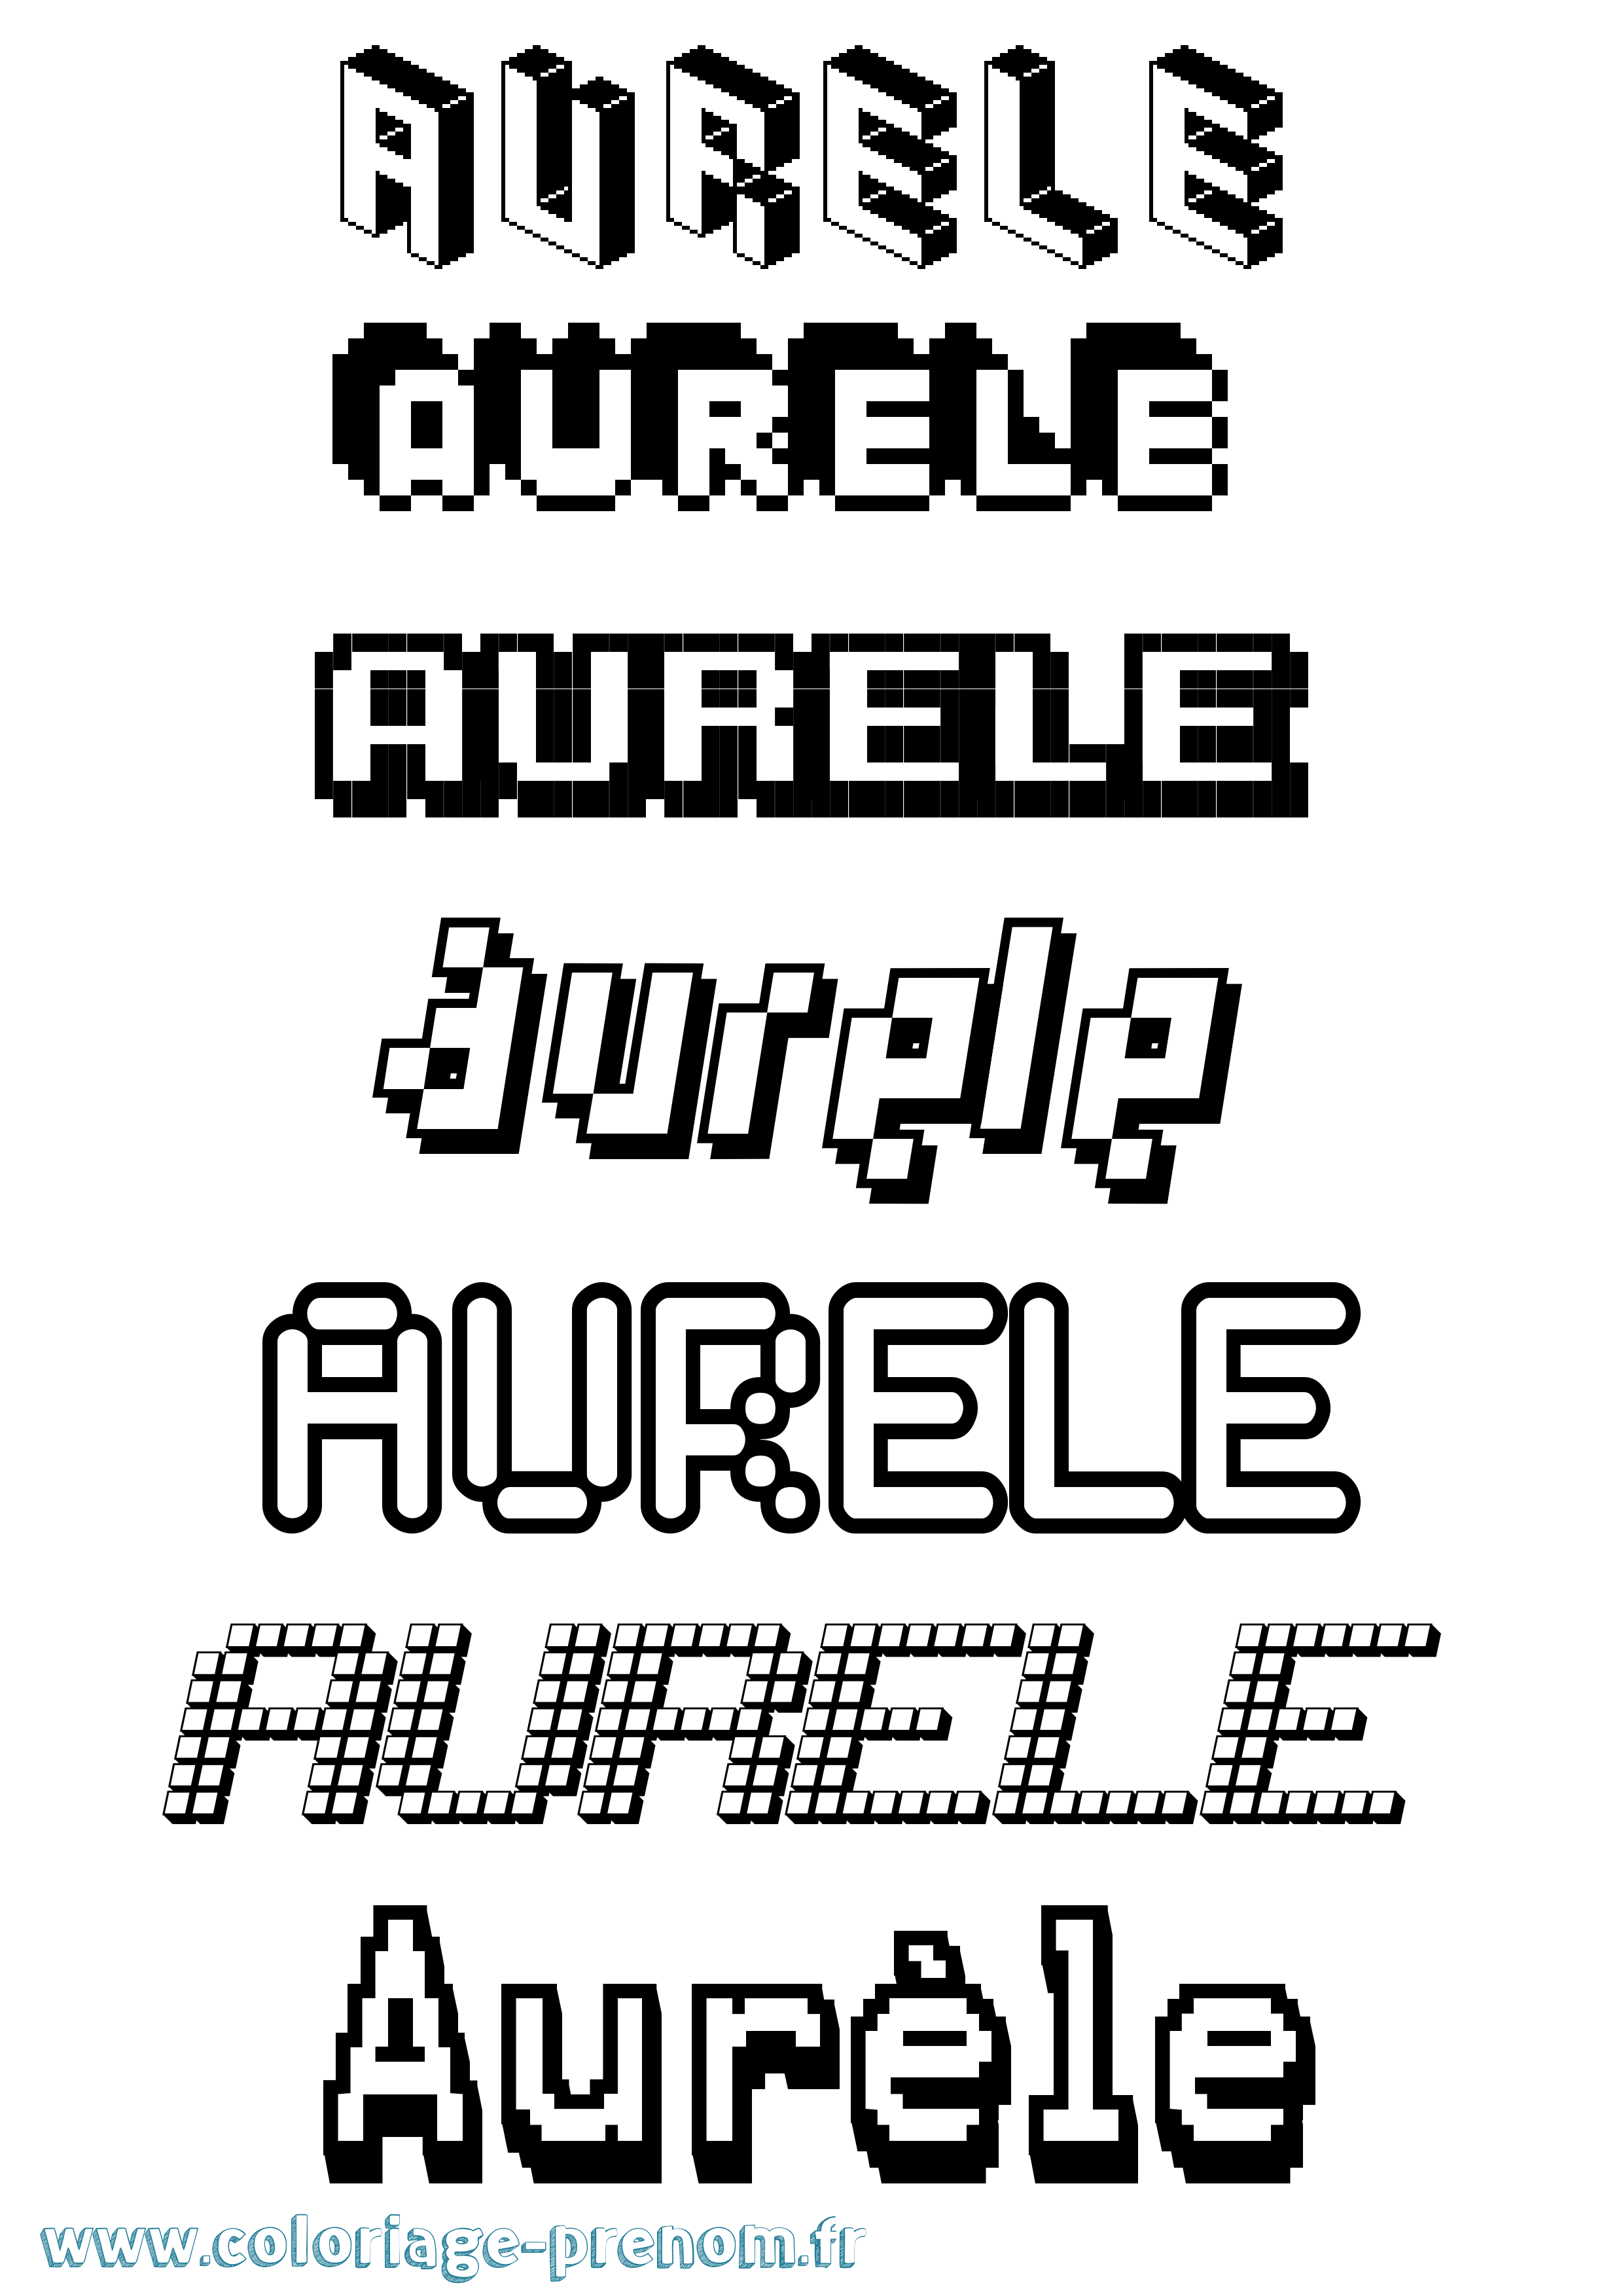 Coloriage prénom Aurèle